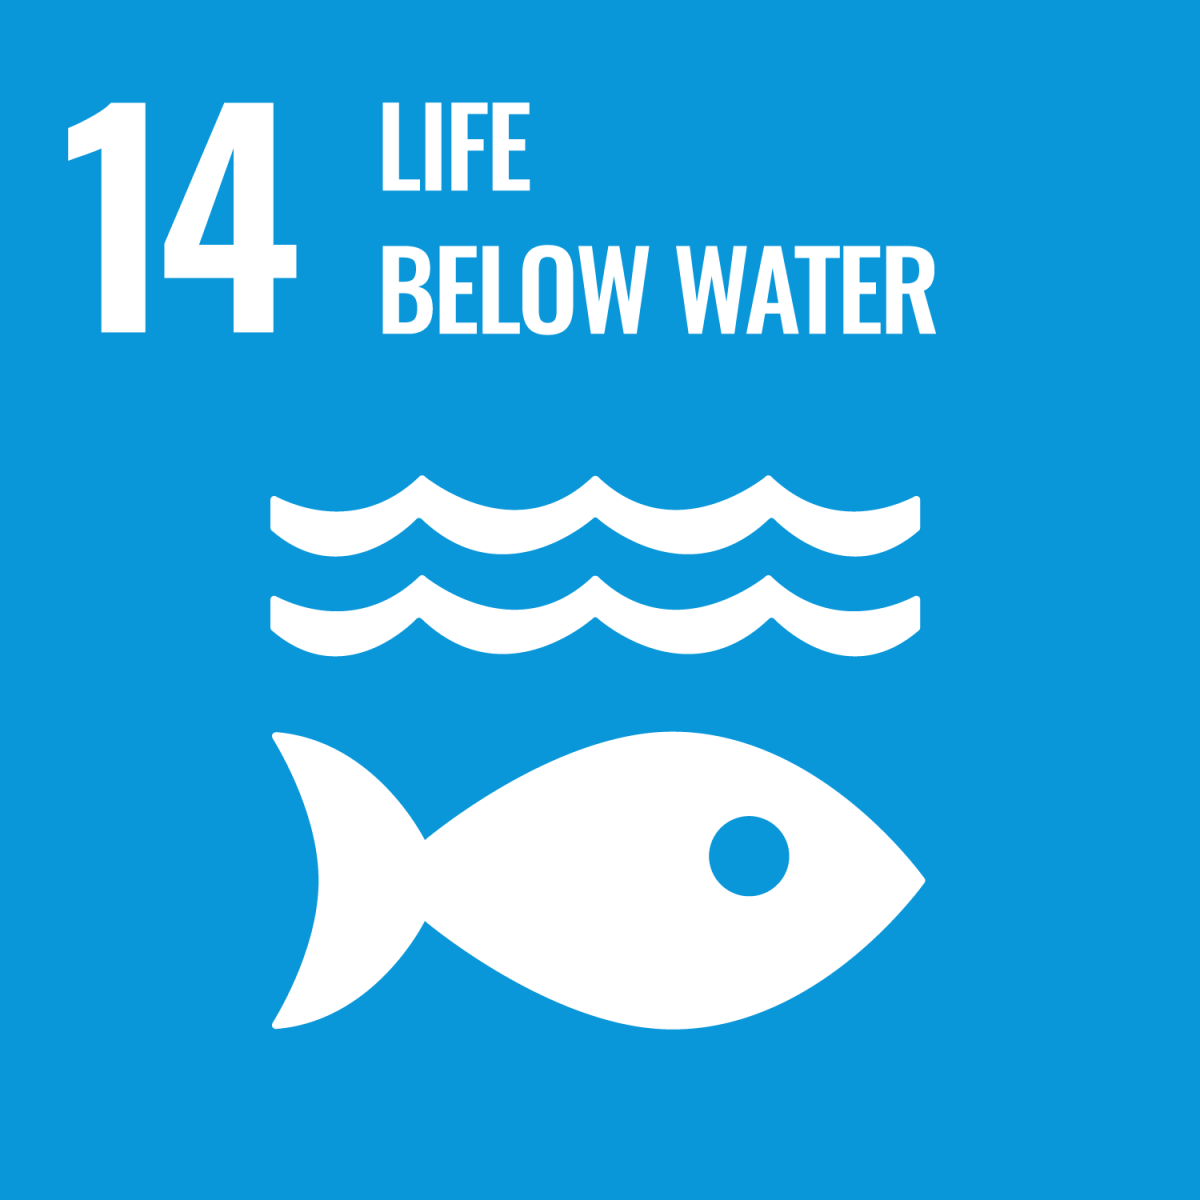 Shows UN SDG 14 - Life Below Water